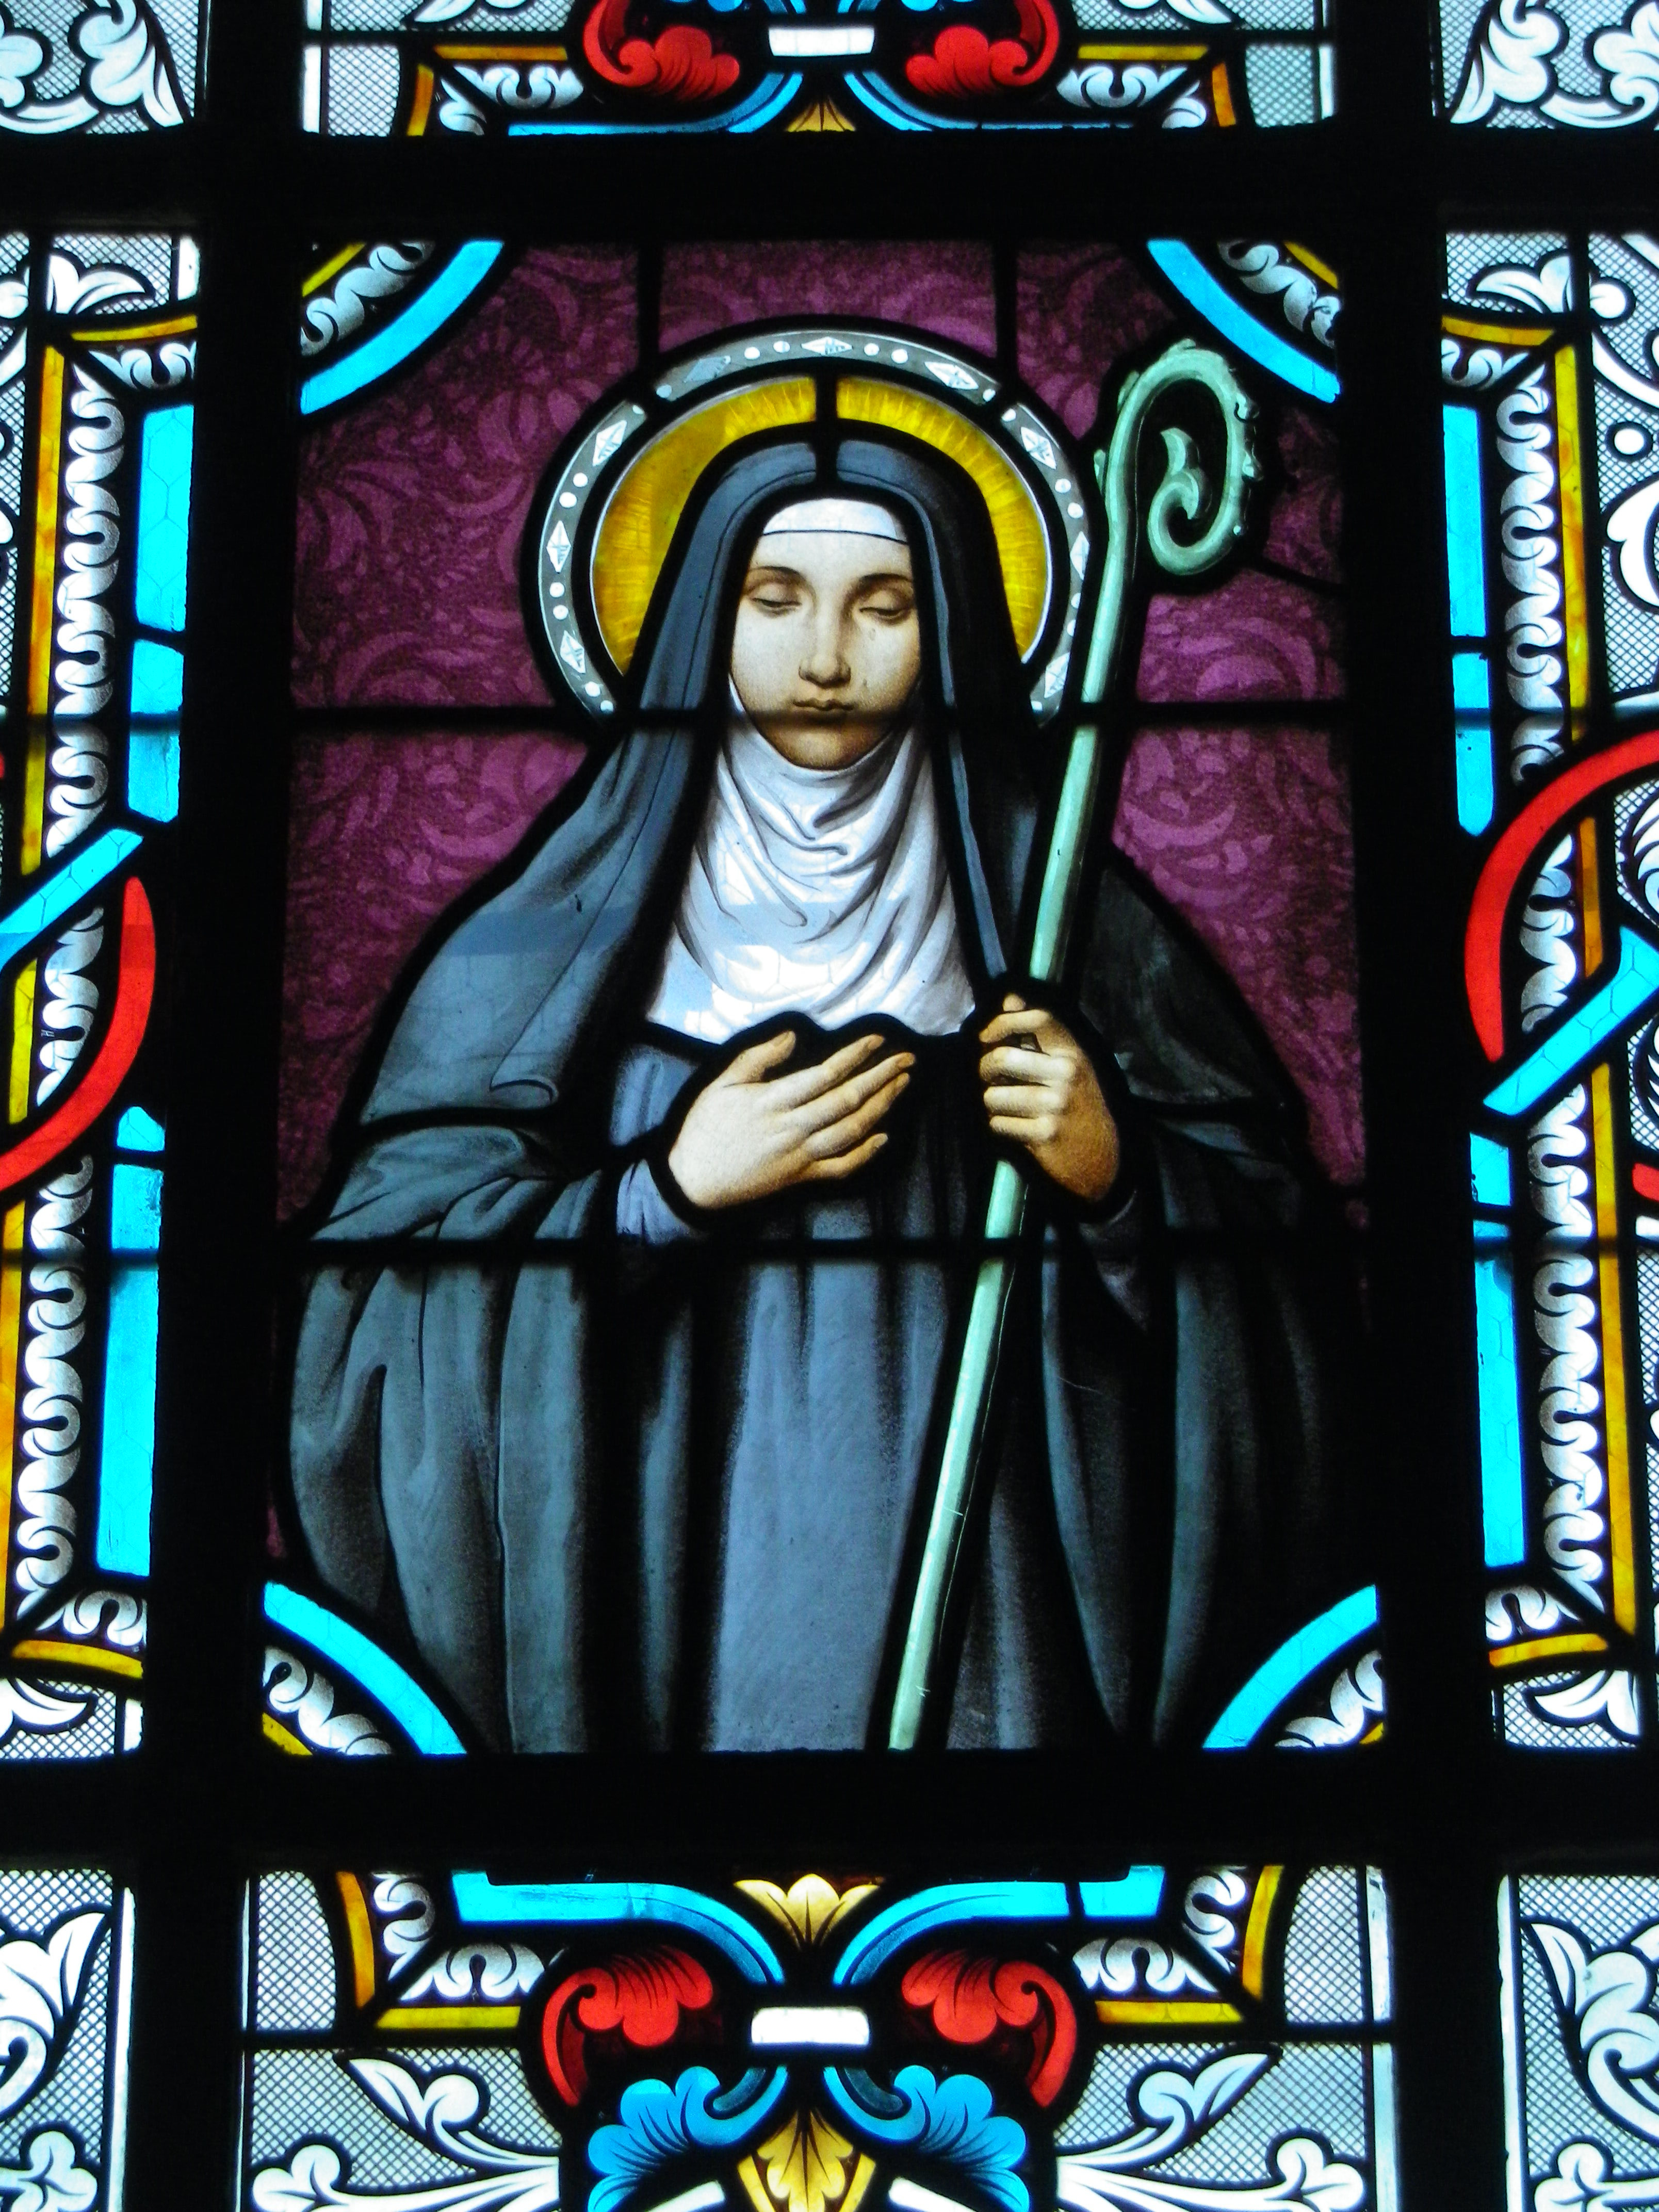 Déotile, fille de Sainte Berthe et deuxième abbesse de l'abbaye de Blangy vers l'an 700.